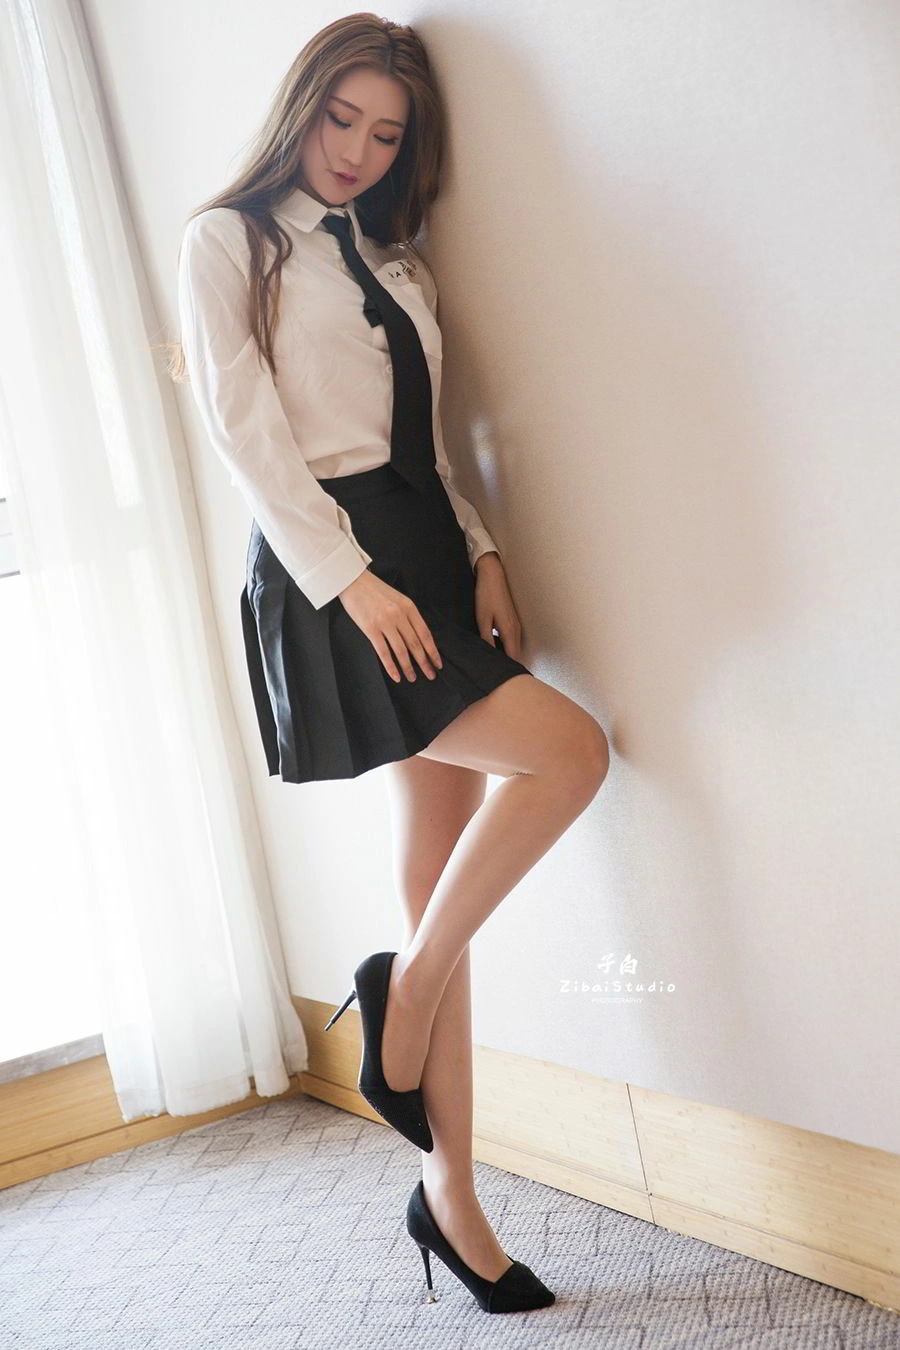 [TouTiao头条女神]2020-04-05 长腿女生 玄子 日本JB制服加黑色短裙性感写真集,006